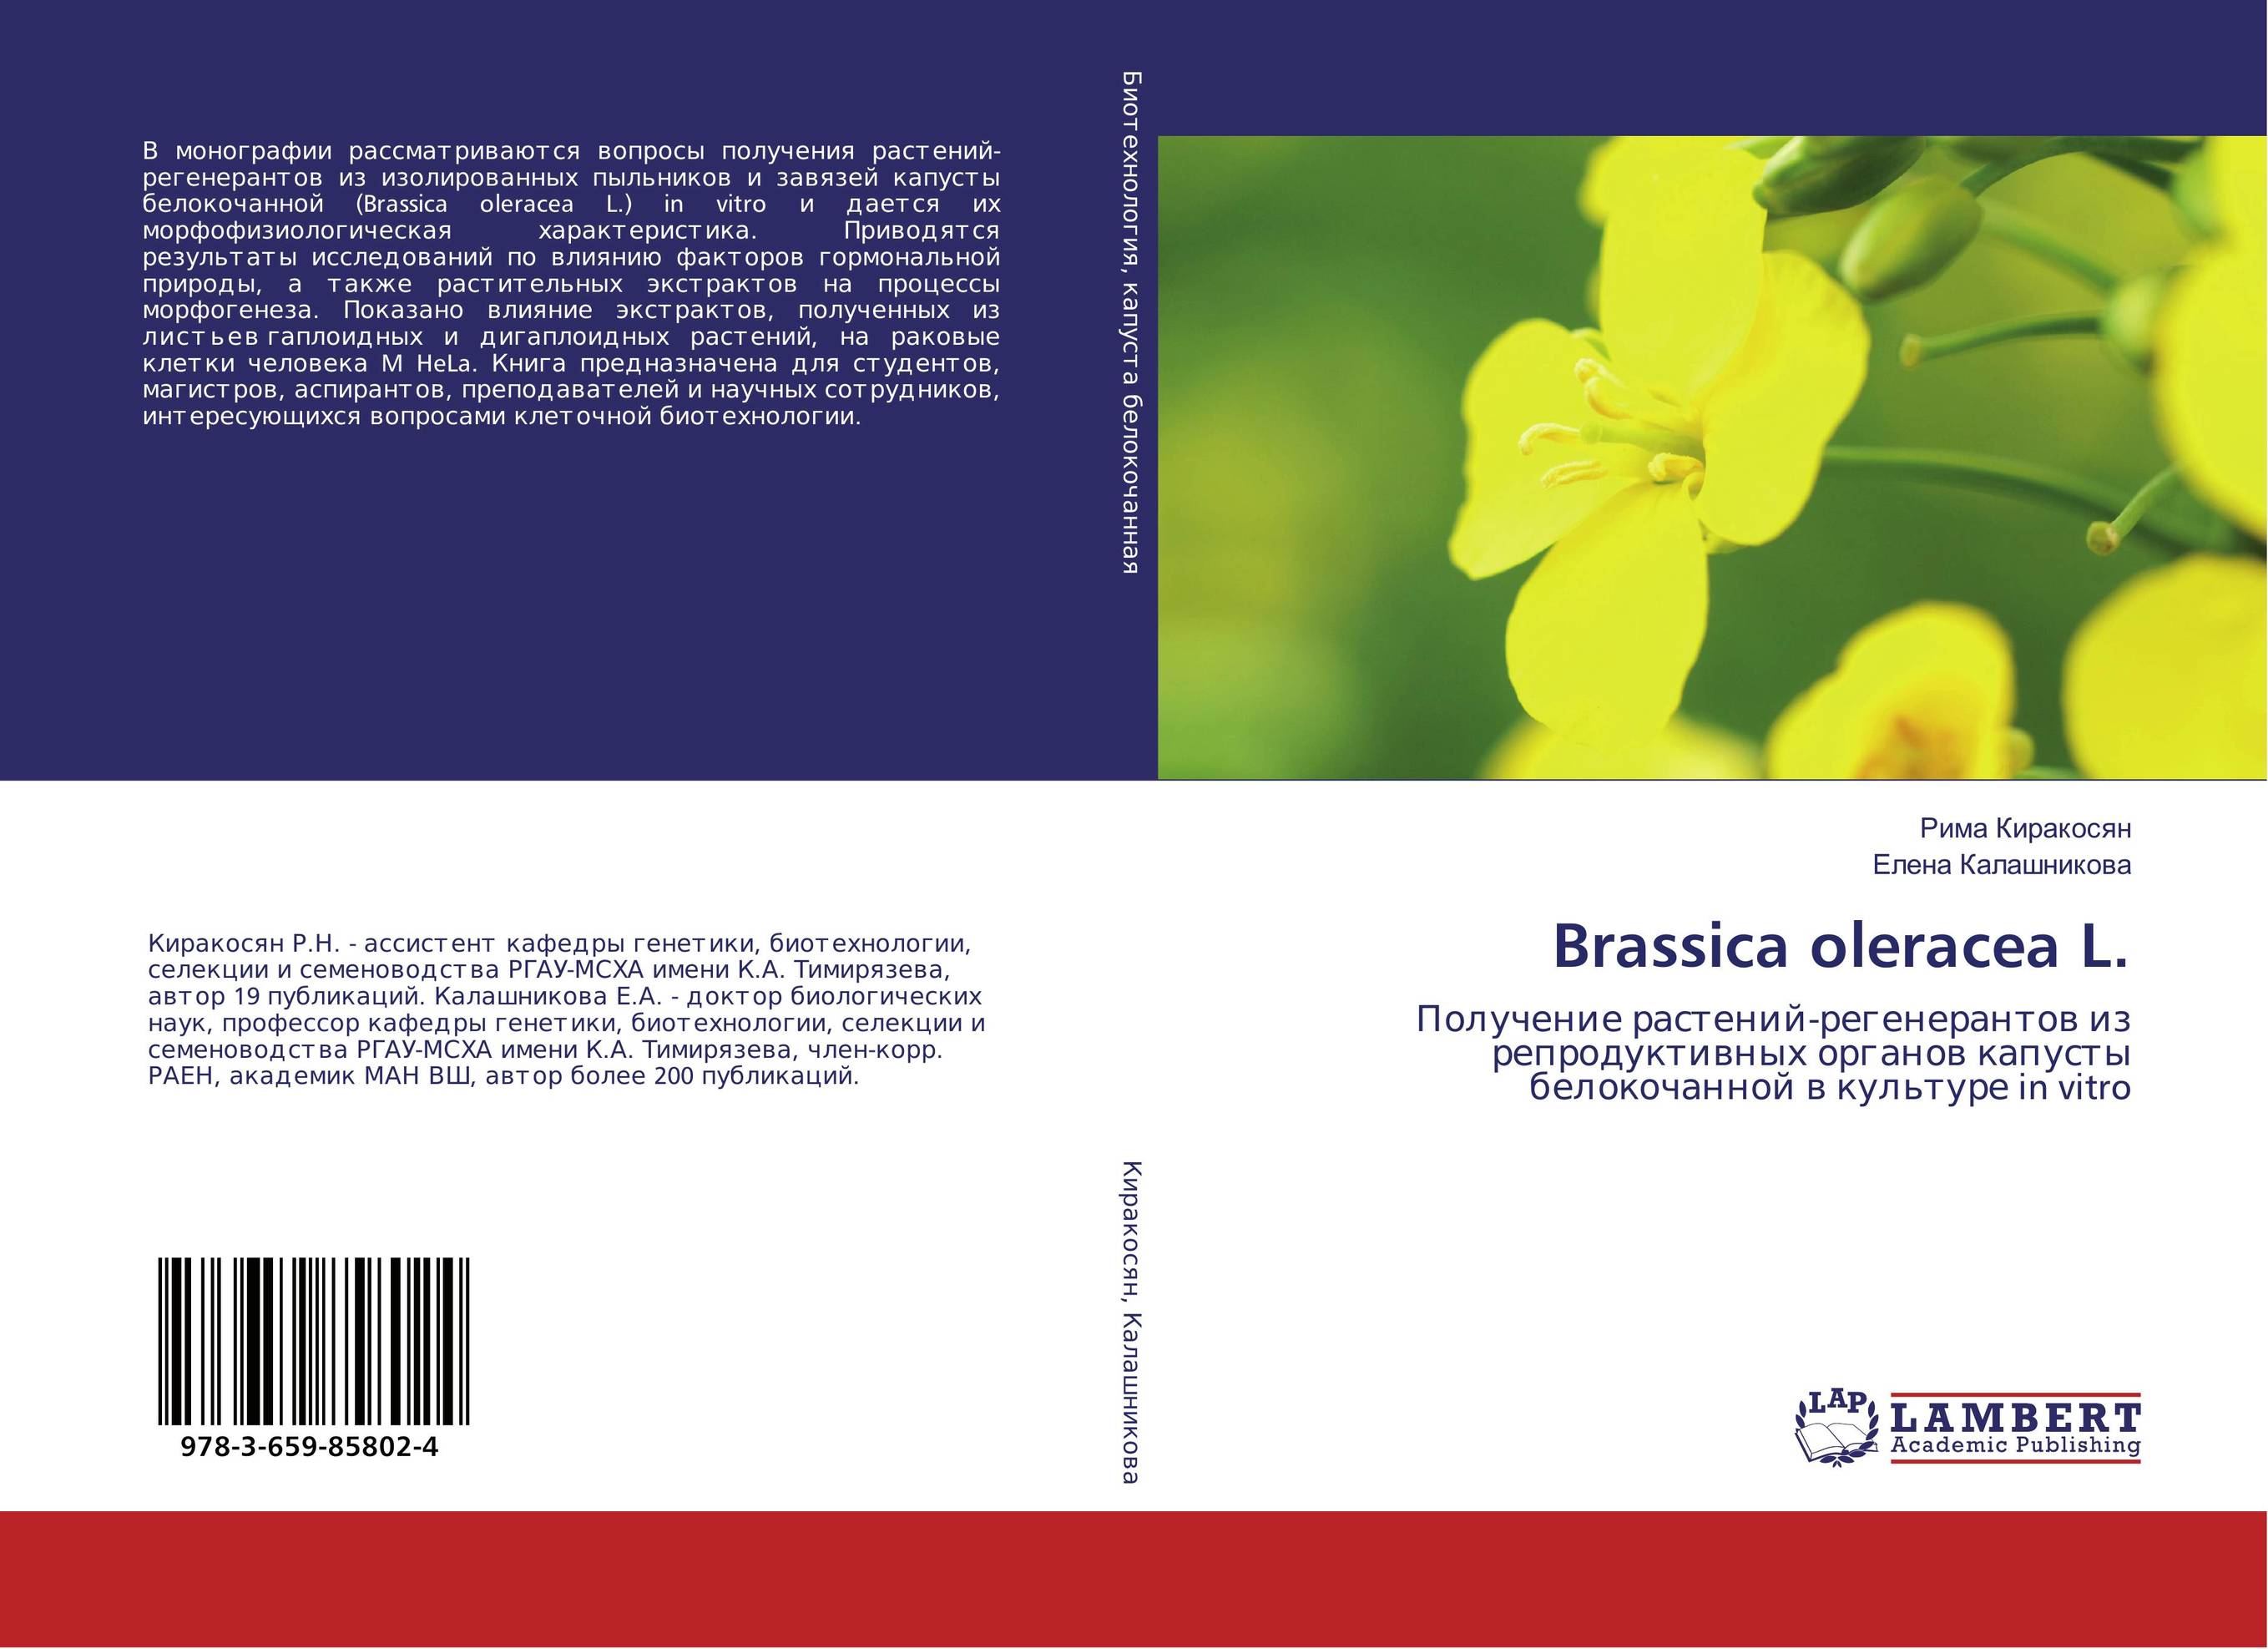 
        Brassica oleracea L.. Получение растений-регенерантов из репродуктивных органов капусты белокочанной в культуре in vitro.
      